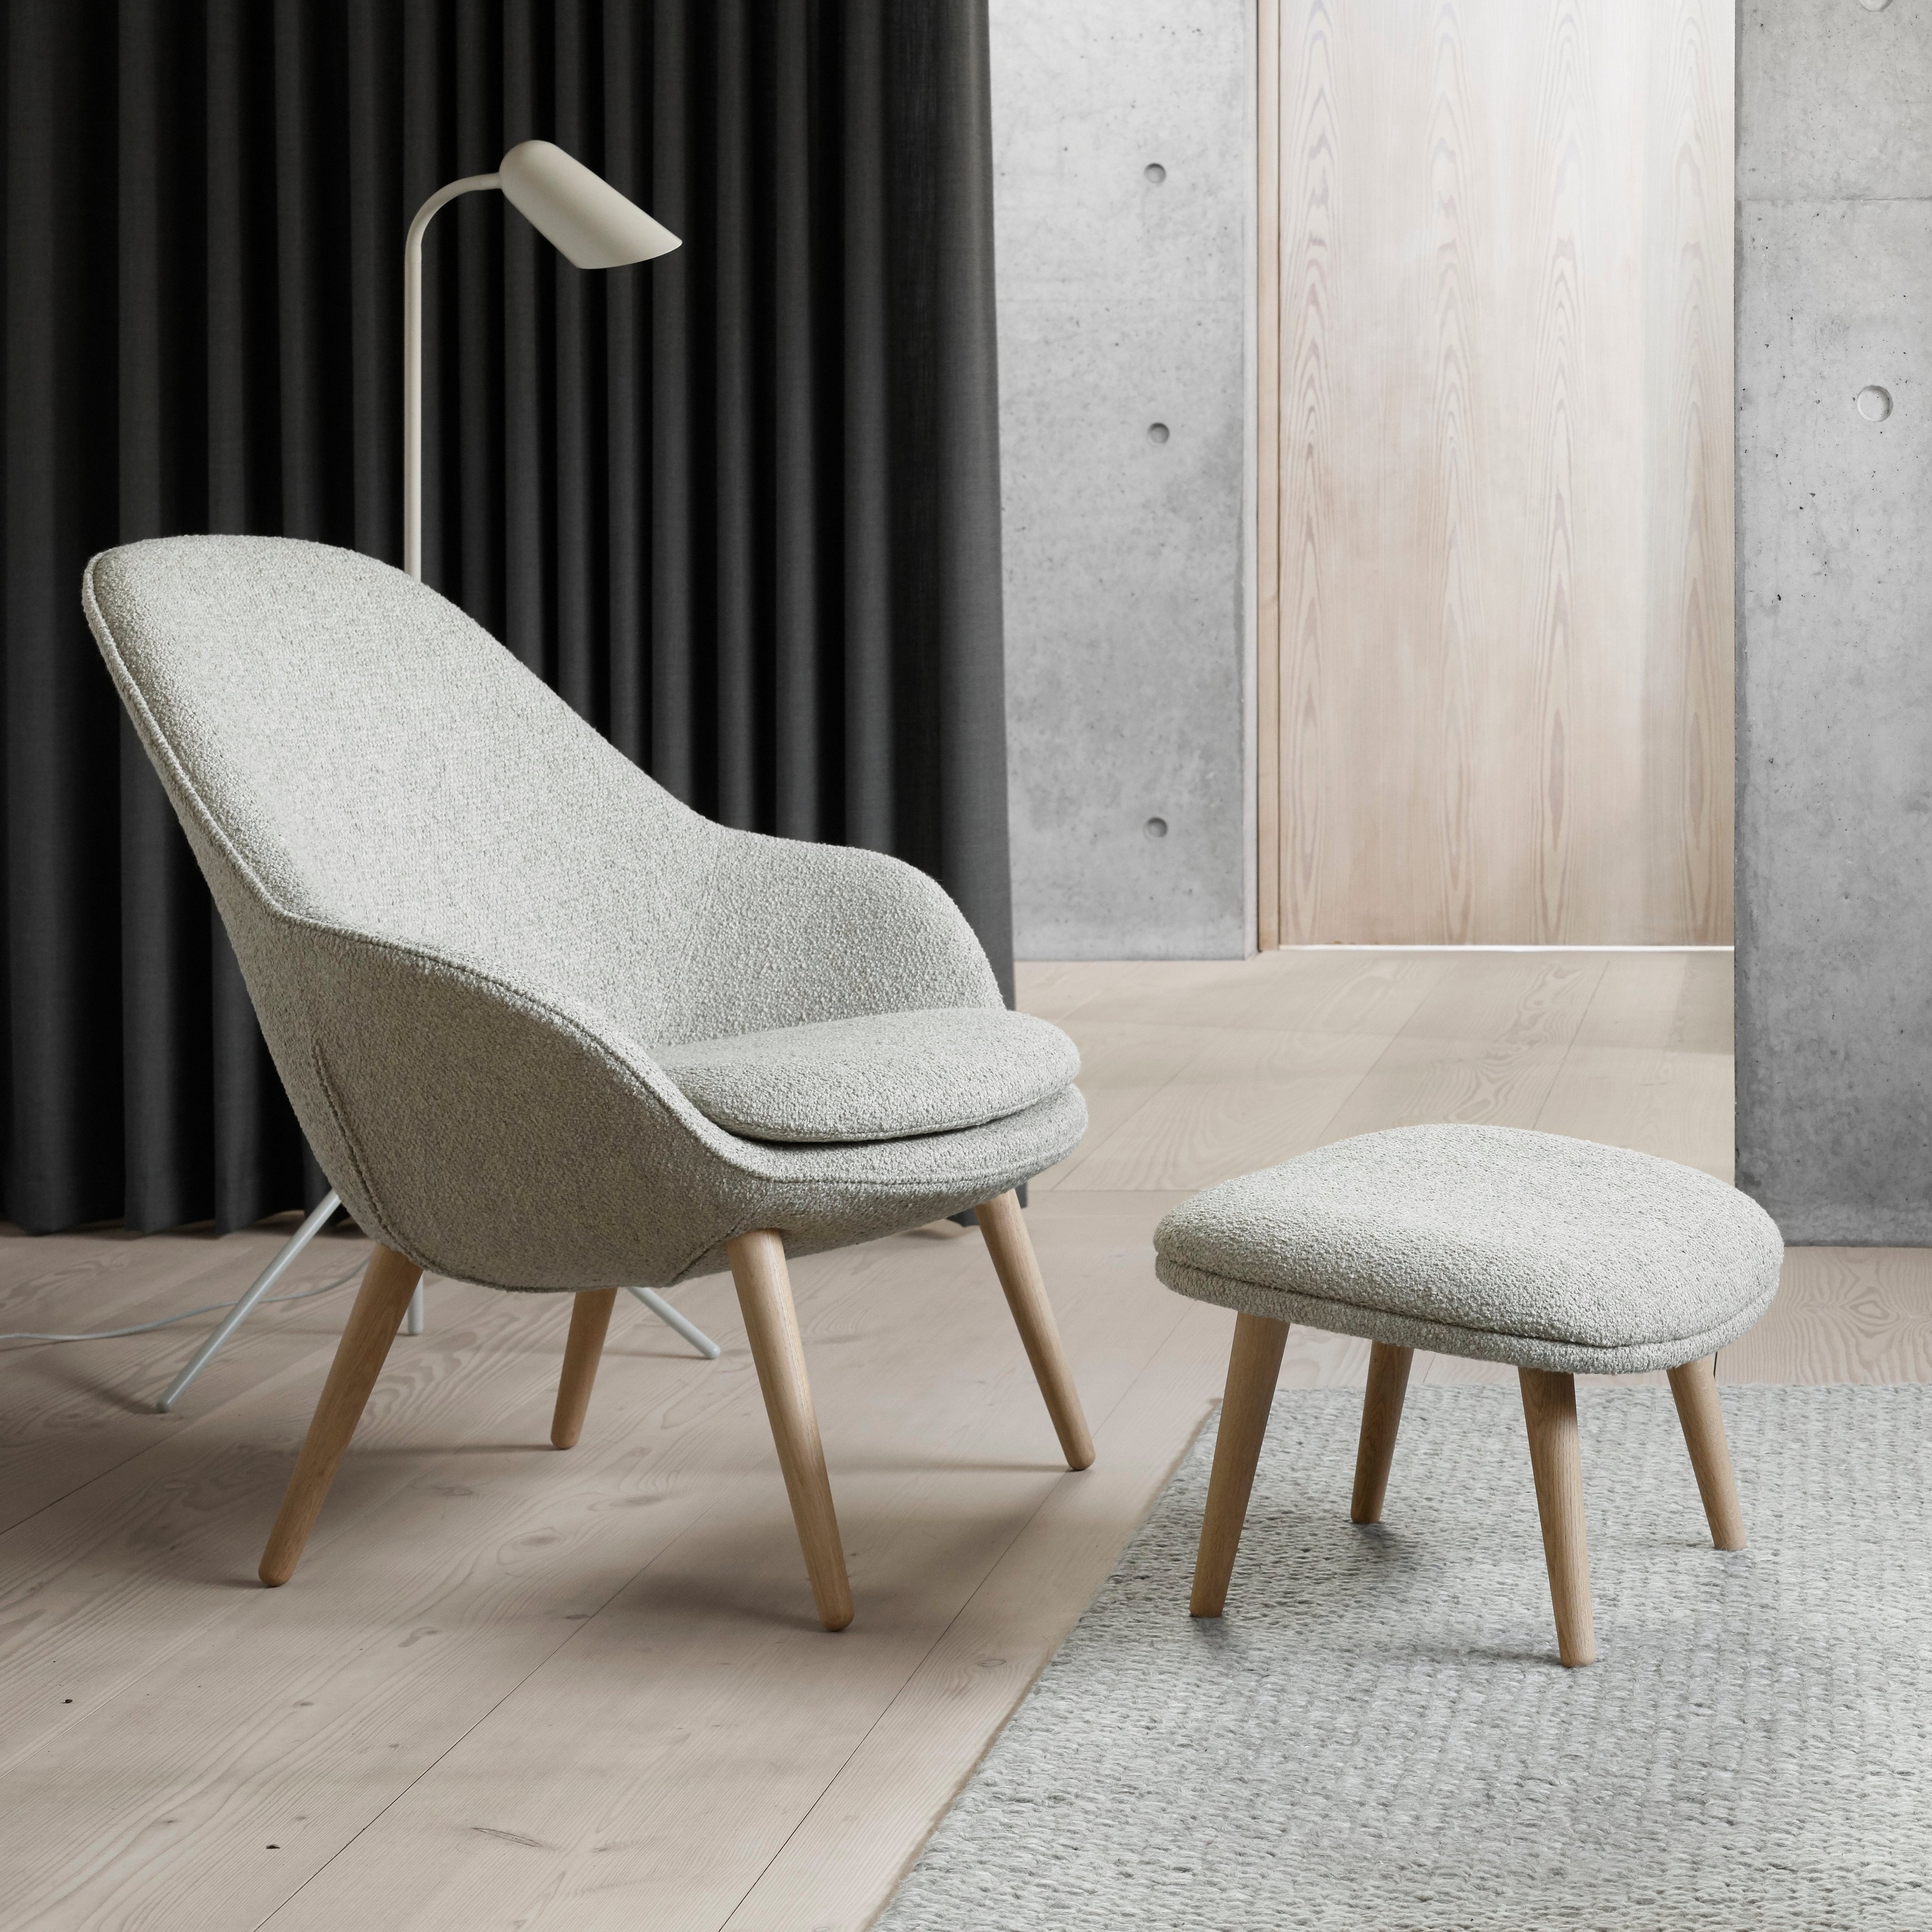 Moderne stol med matchende fotskammel, gulvlampe, mørke gardiner og betongdetaljer.